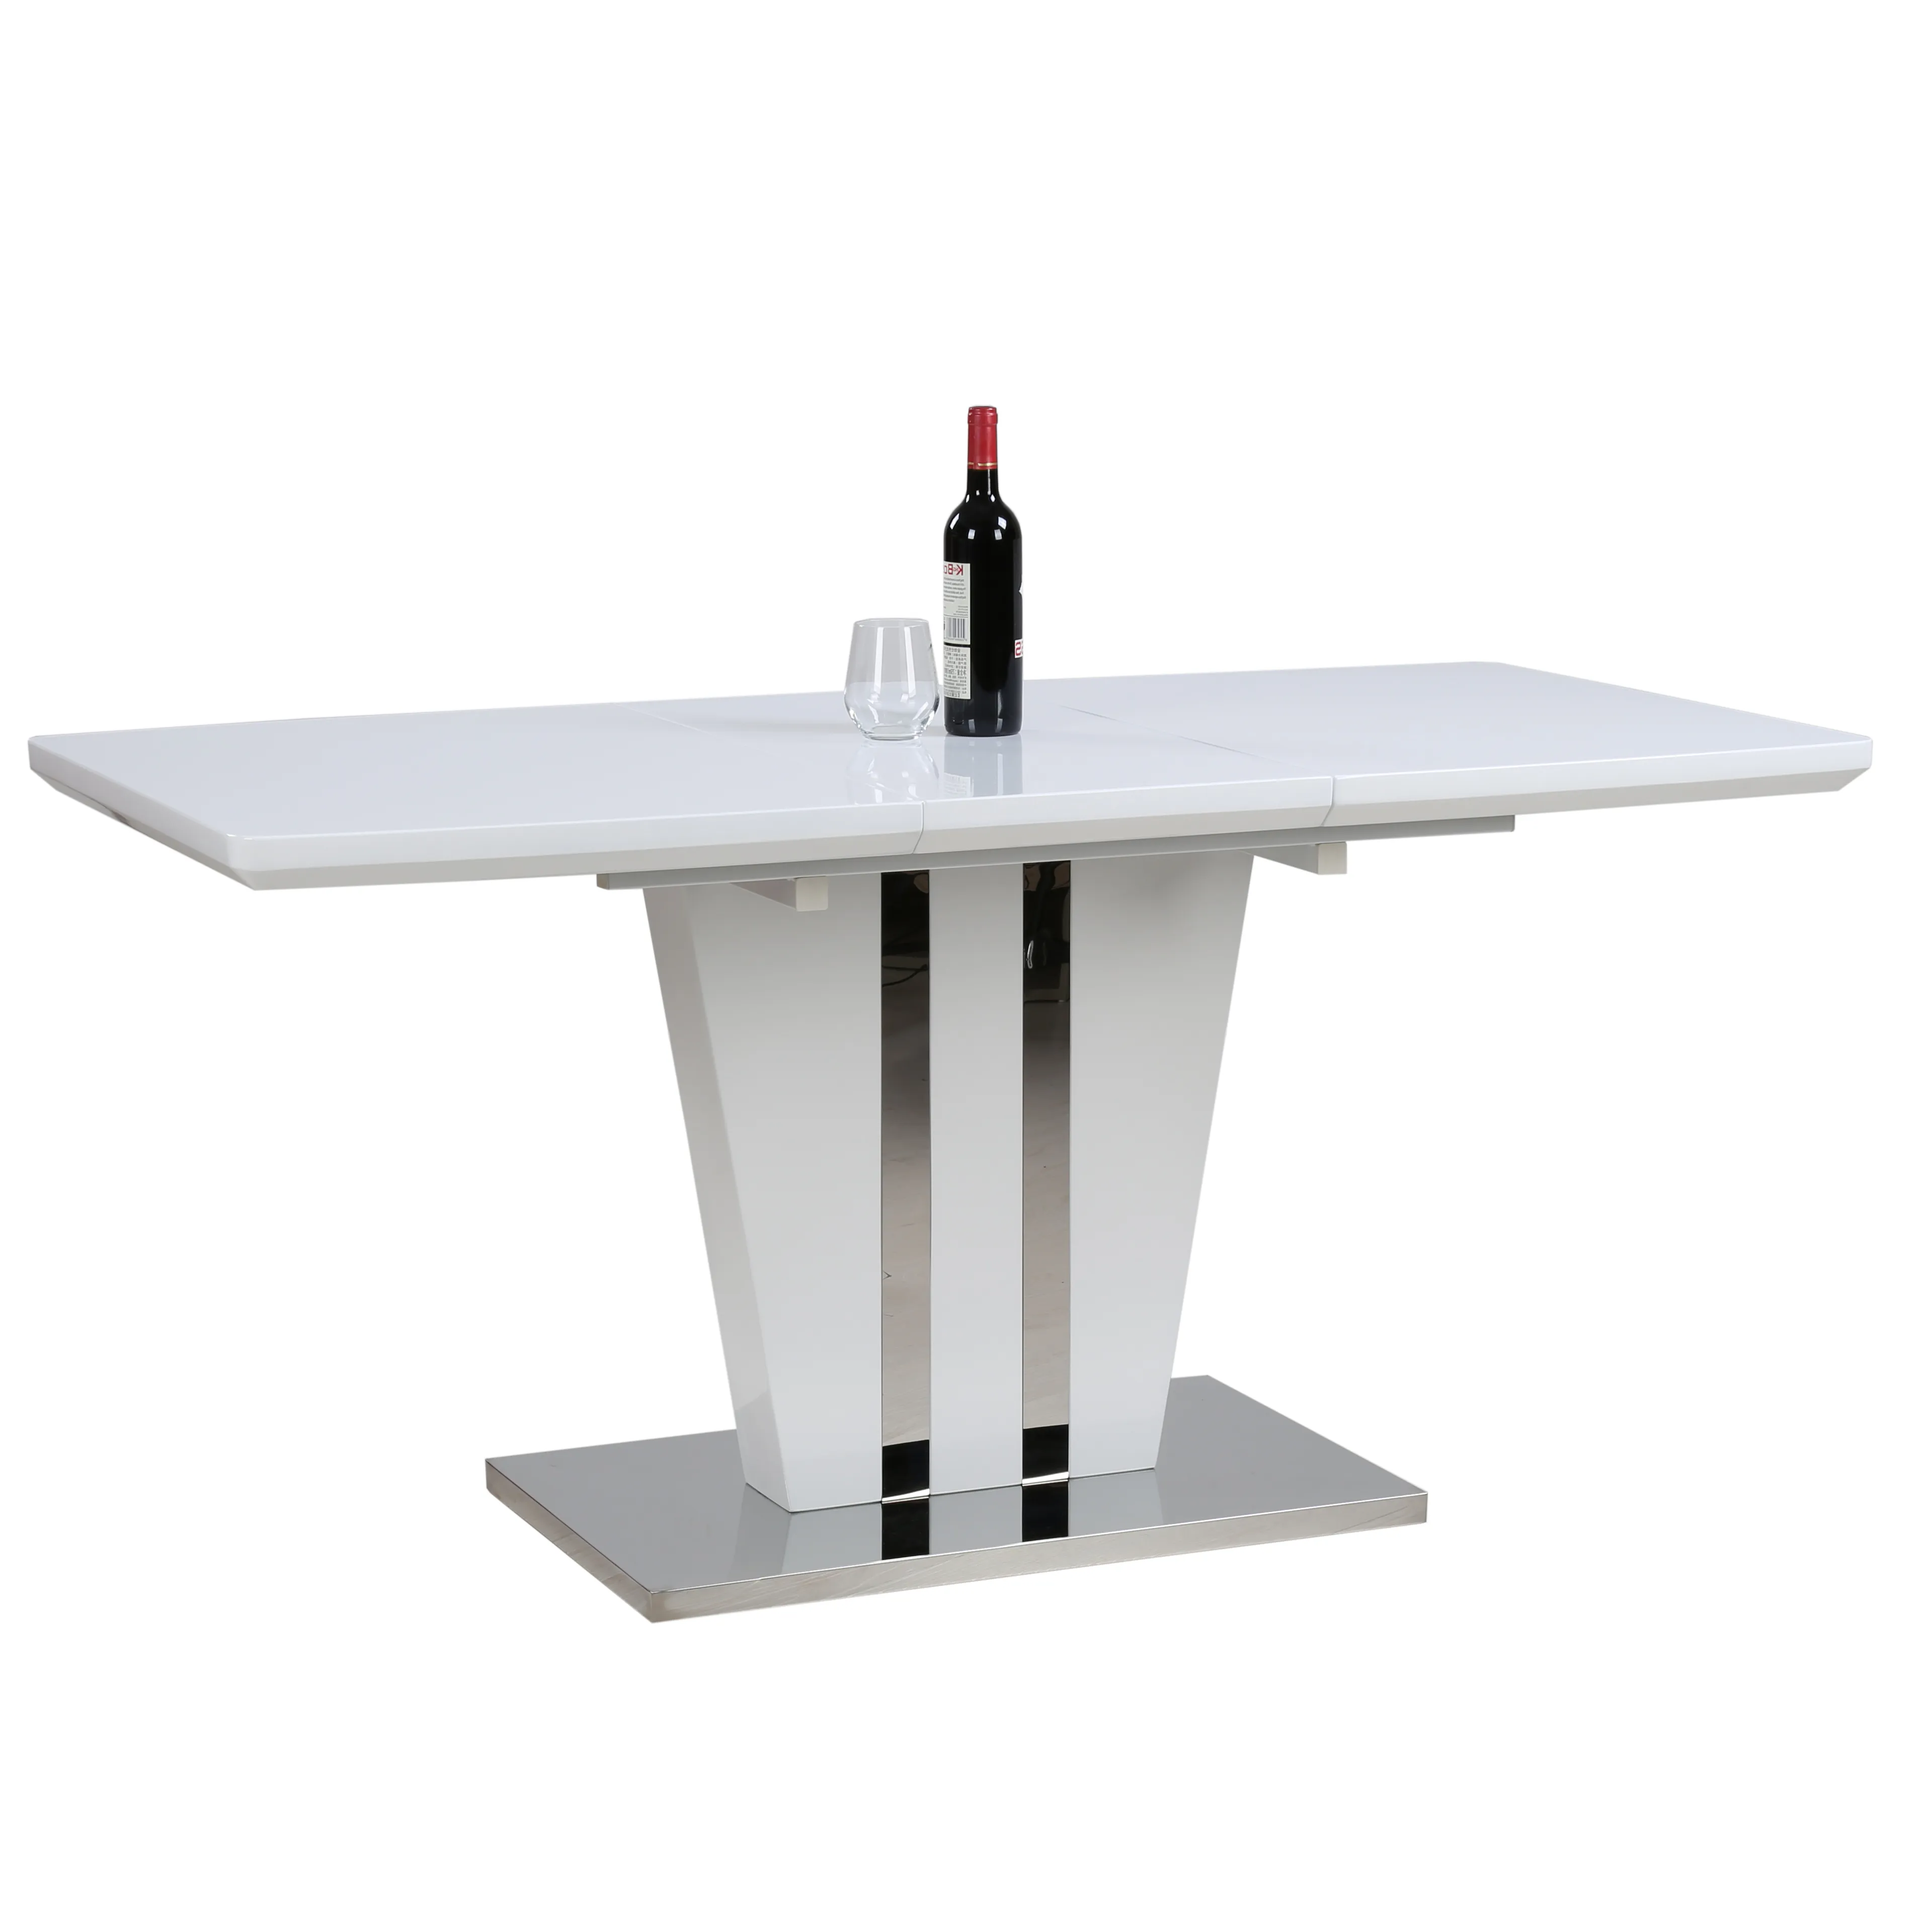 Mesa de comedor inteligente extensible para el hogar, mueble moderno de madera de alto brillo, diseño único, color blanco